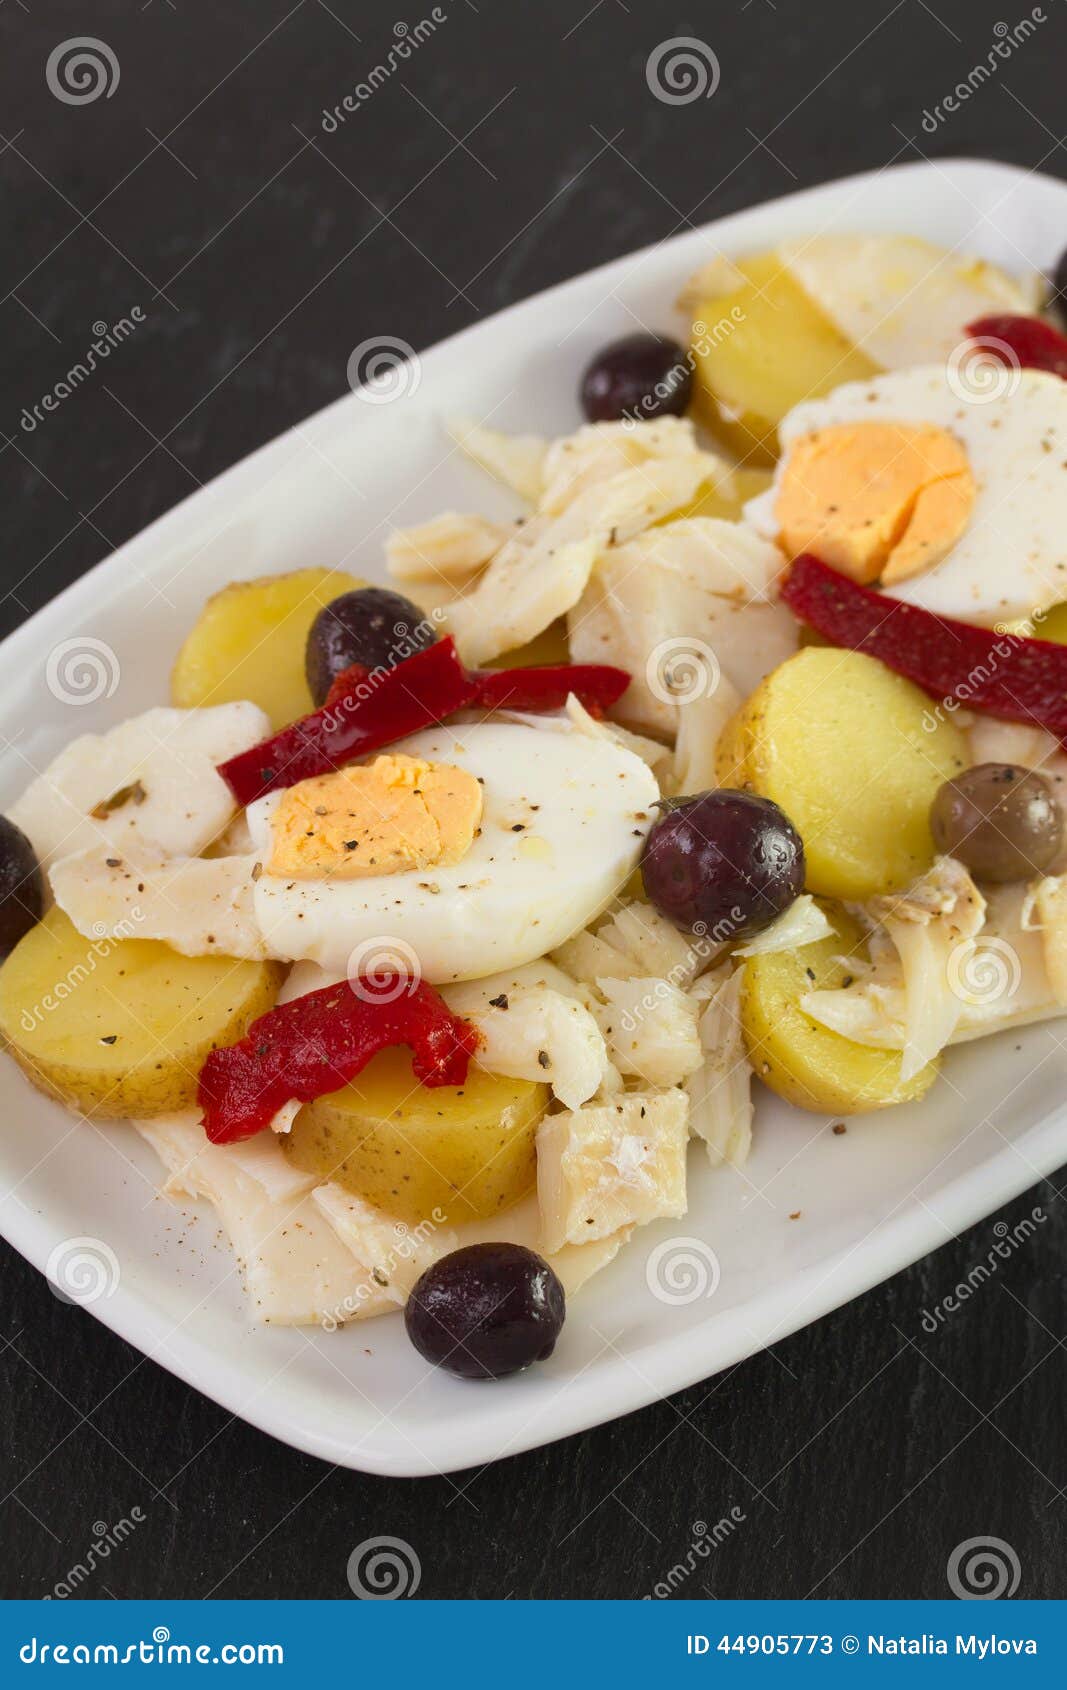 Bacalhau stock image. Image of yolk, holiday, vegetables - 44905773